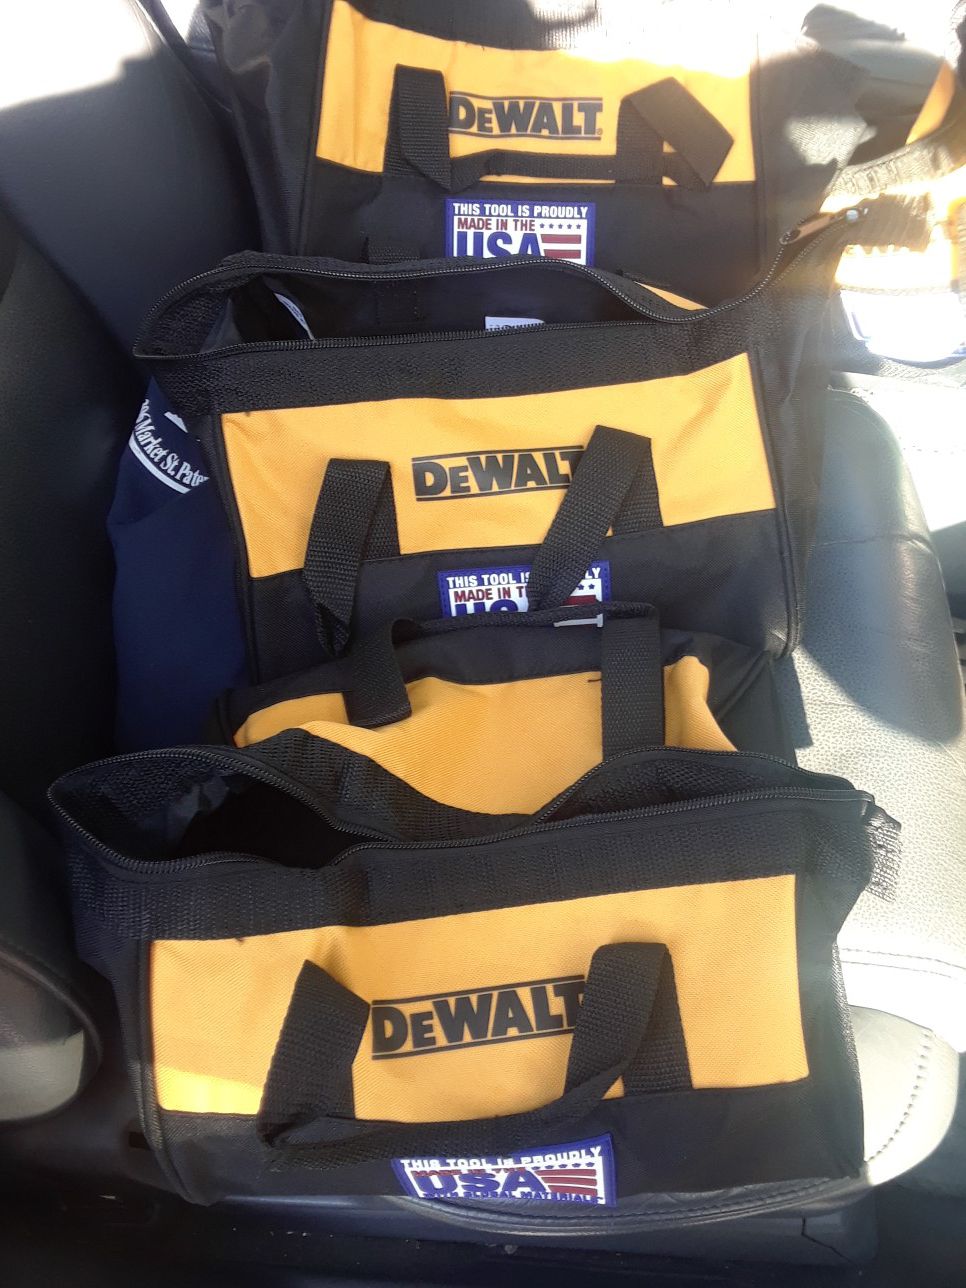 New Dewalt bag 3 bas for drill